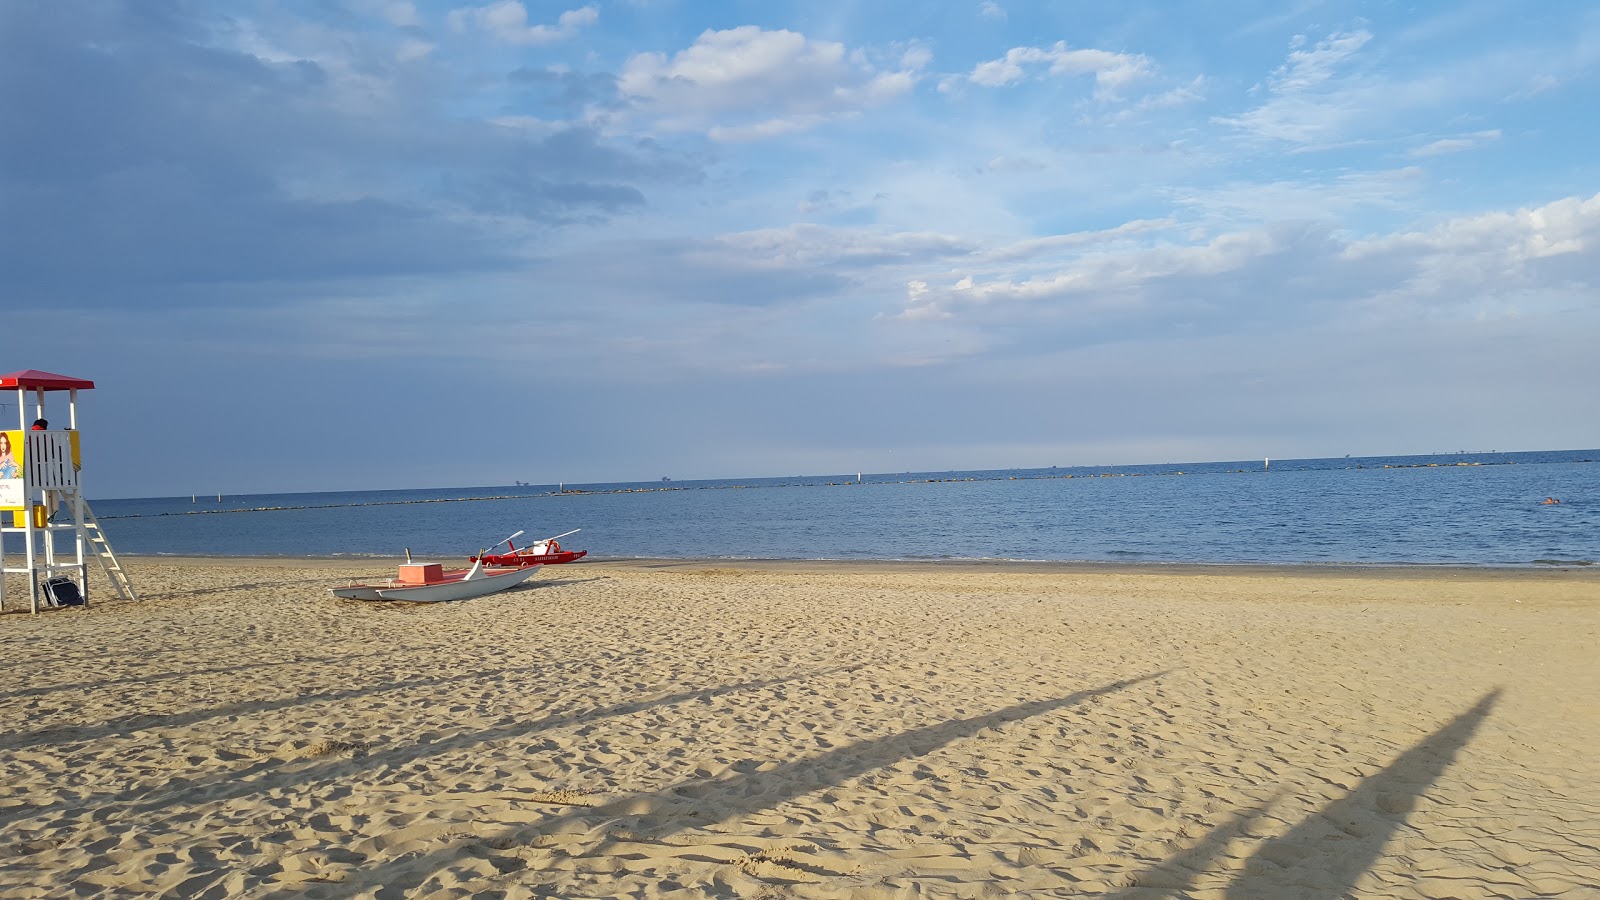 马里纳迪拉文纳海滩的照片 带有明亮的沙子表面